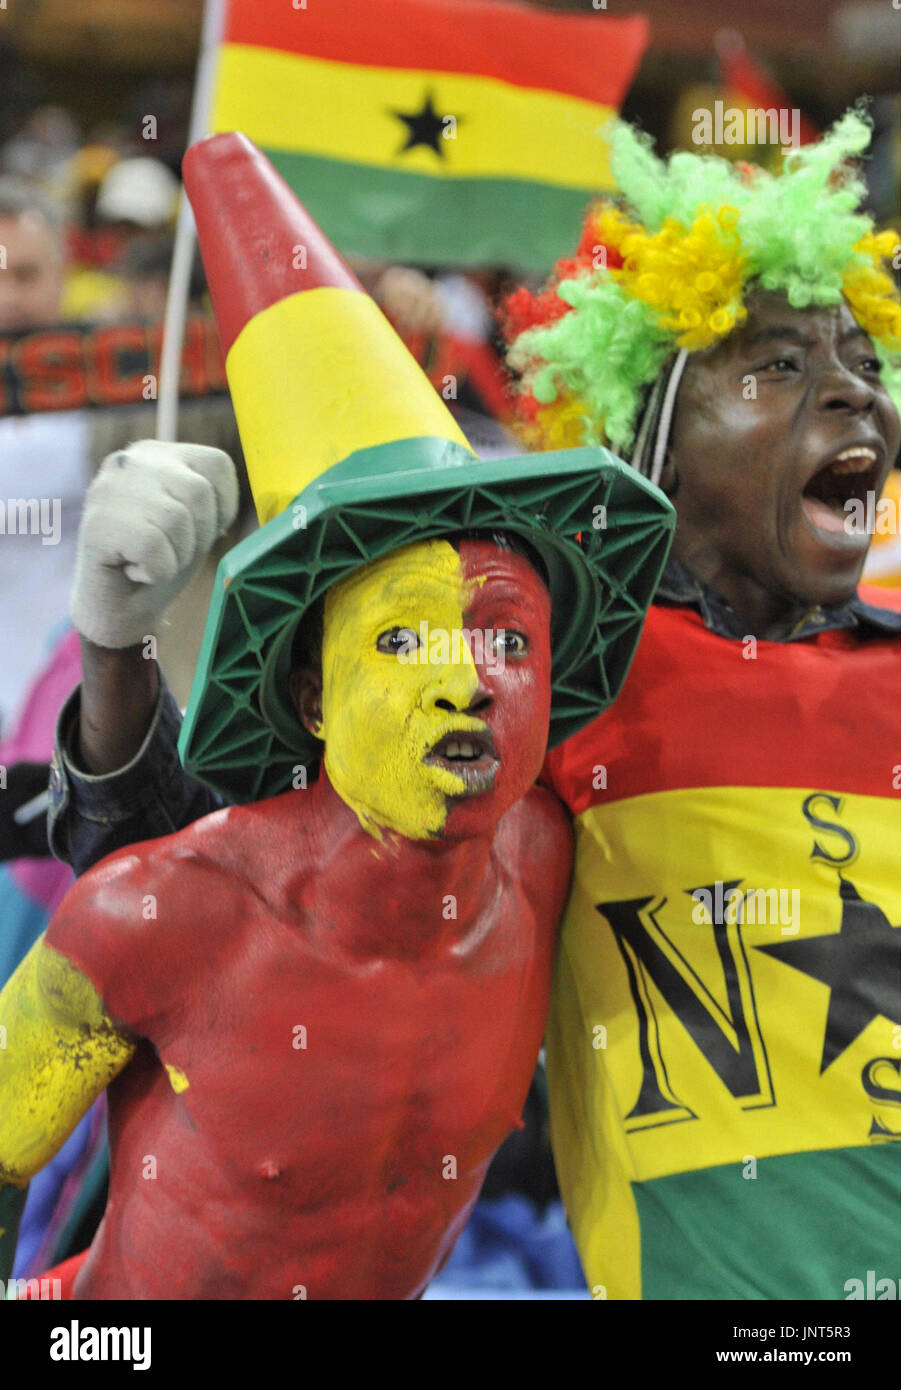 JOHANNESBURG, Südafrika - Fans von Ghana jubeln während eines Spiels der Welt Cup Gruppe D gegen Deutschland am 23. Juni 2010 im Soccer City Stadium in Johannesburg, Südafrika. Ghana war 1-0 besiegte, aber beide Teams in das Turnier zweite Runde fortgeschritten. (Kyodo) Stockfoto